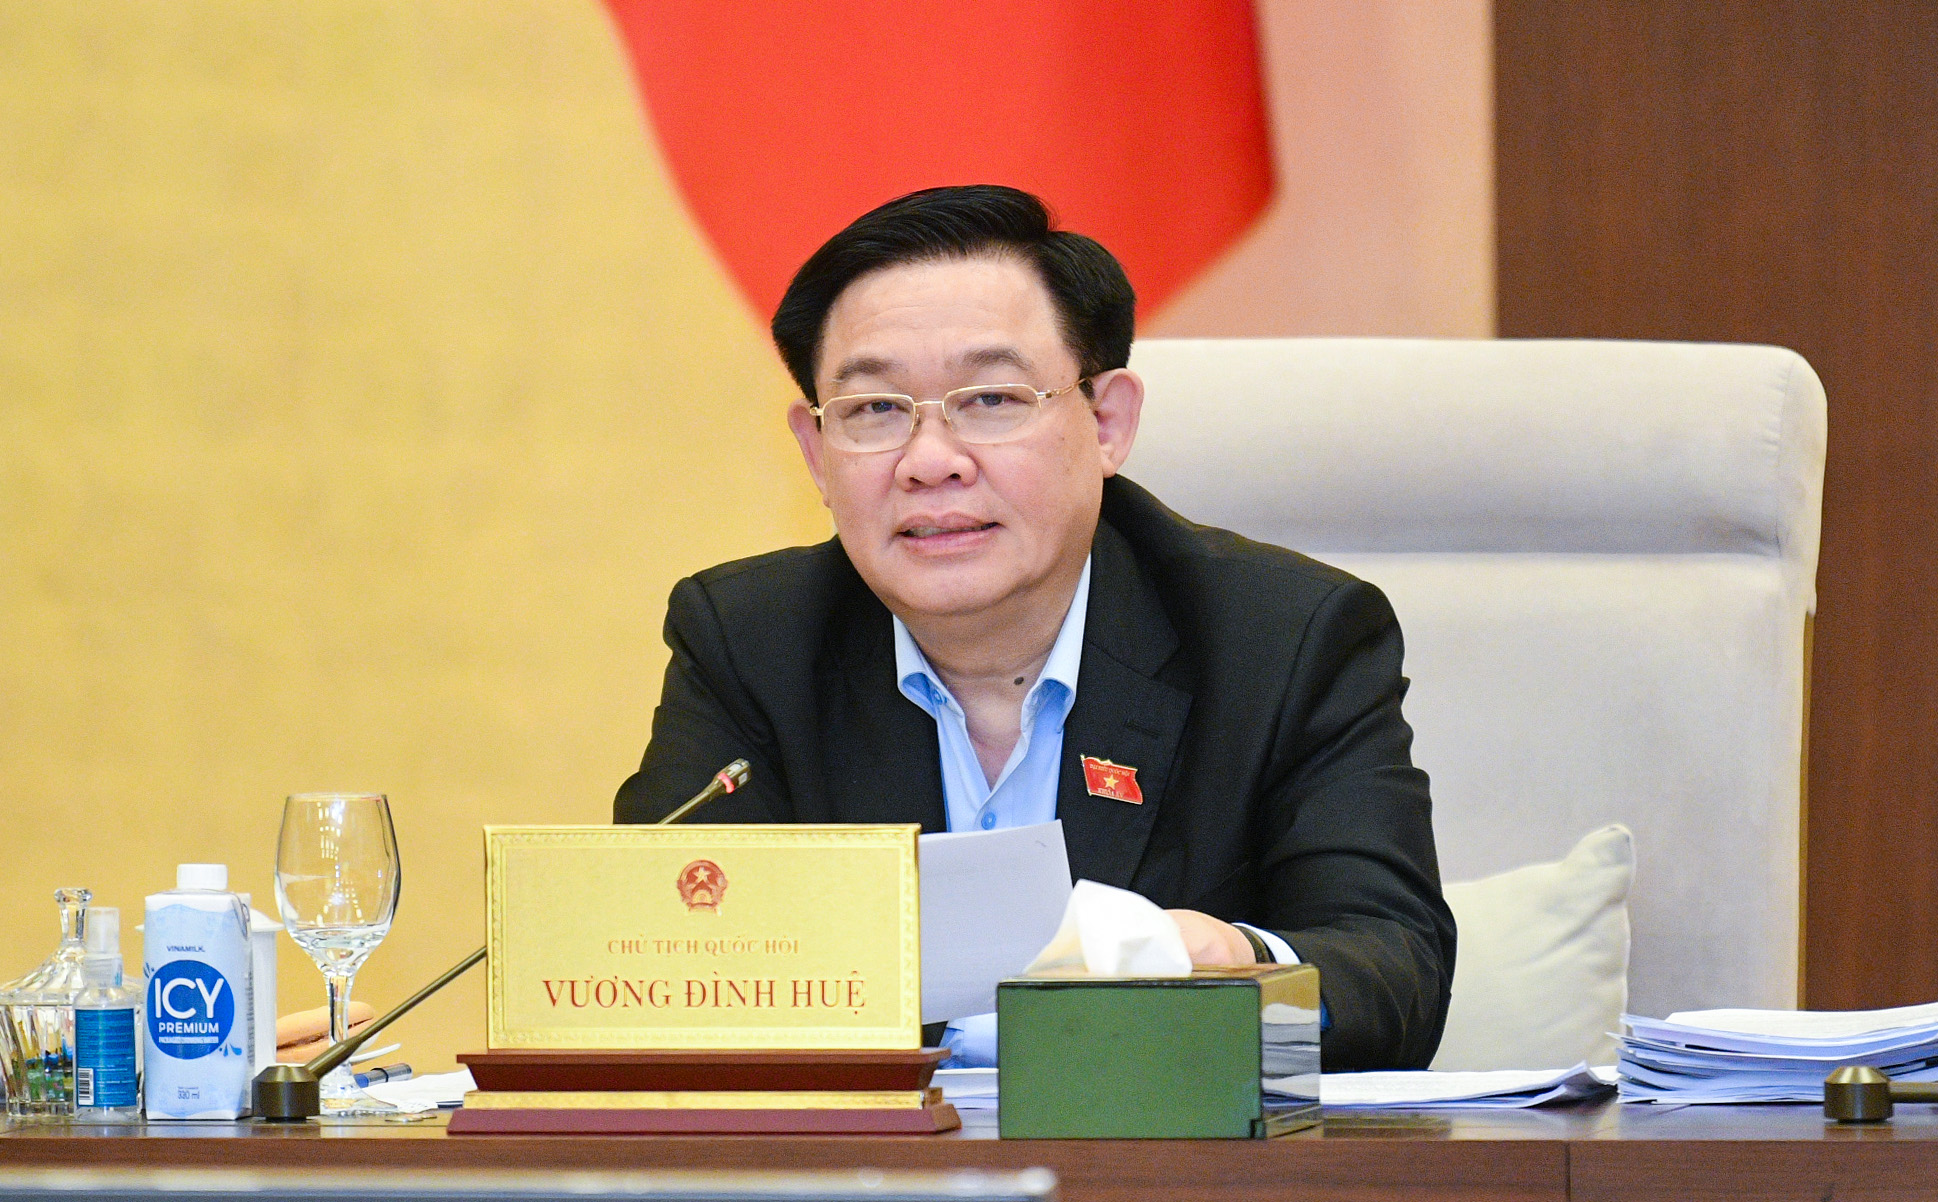 Chất vấn Bộ trưởng Bùi Thanh Sơn công tác bảo hộ công dân; sắp xếp, kiện toàn bộ máy ngoại giao- Ảnh 4.